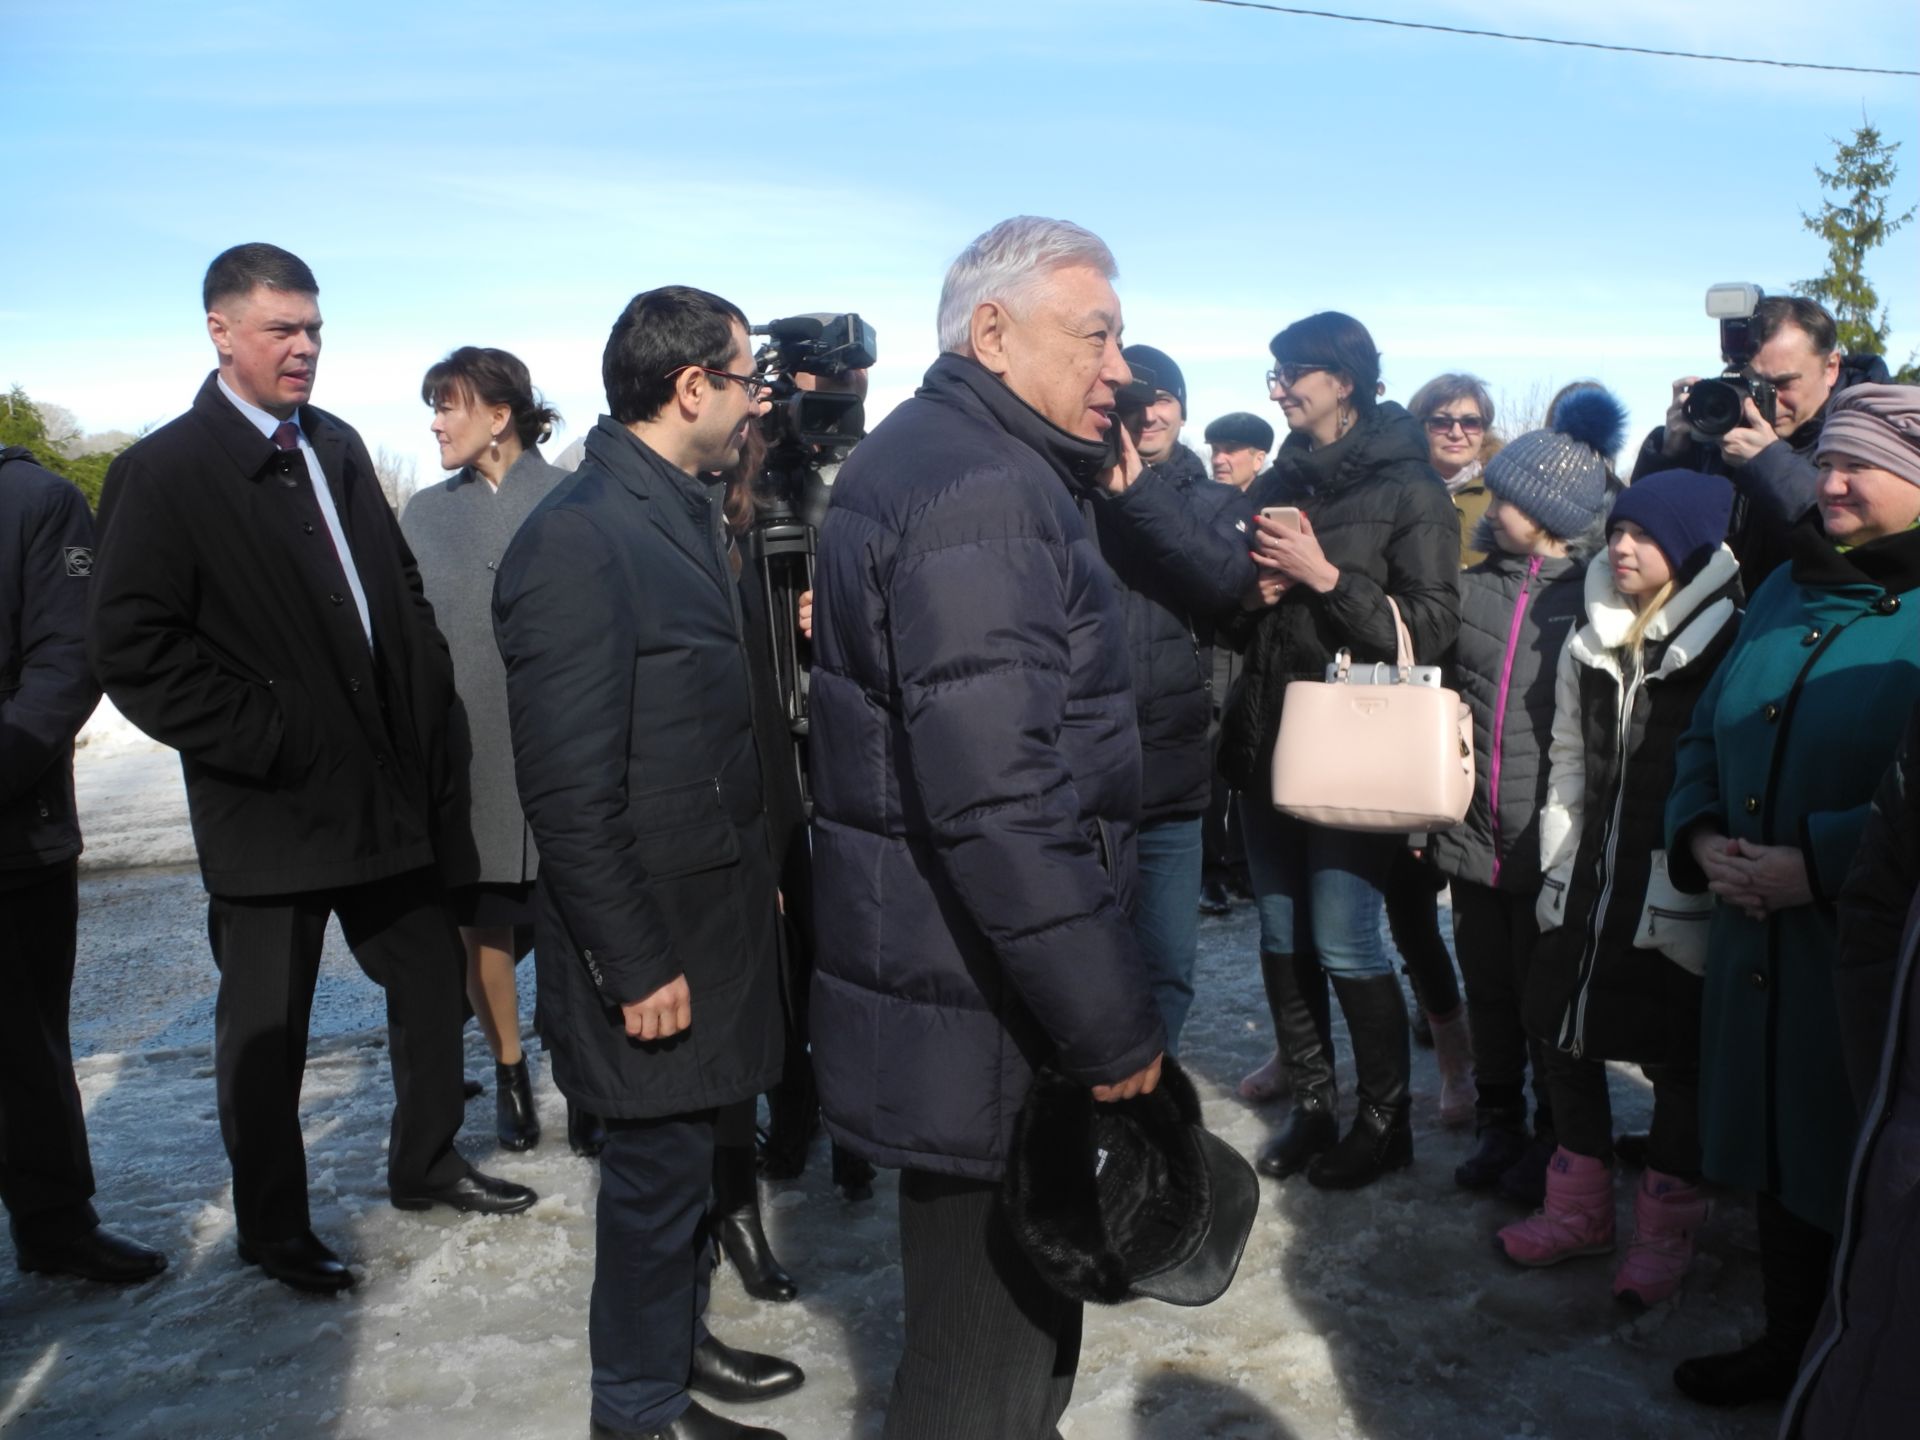 Сегодня в Масловке состоялось торжество по случаю открытия фельдшерского-акушерского пункта